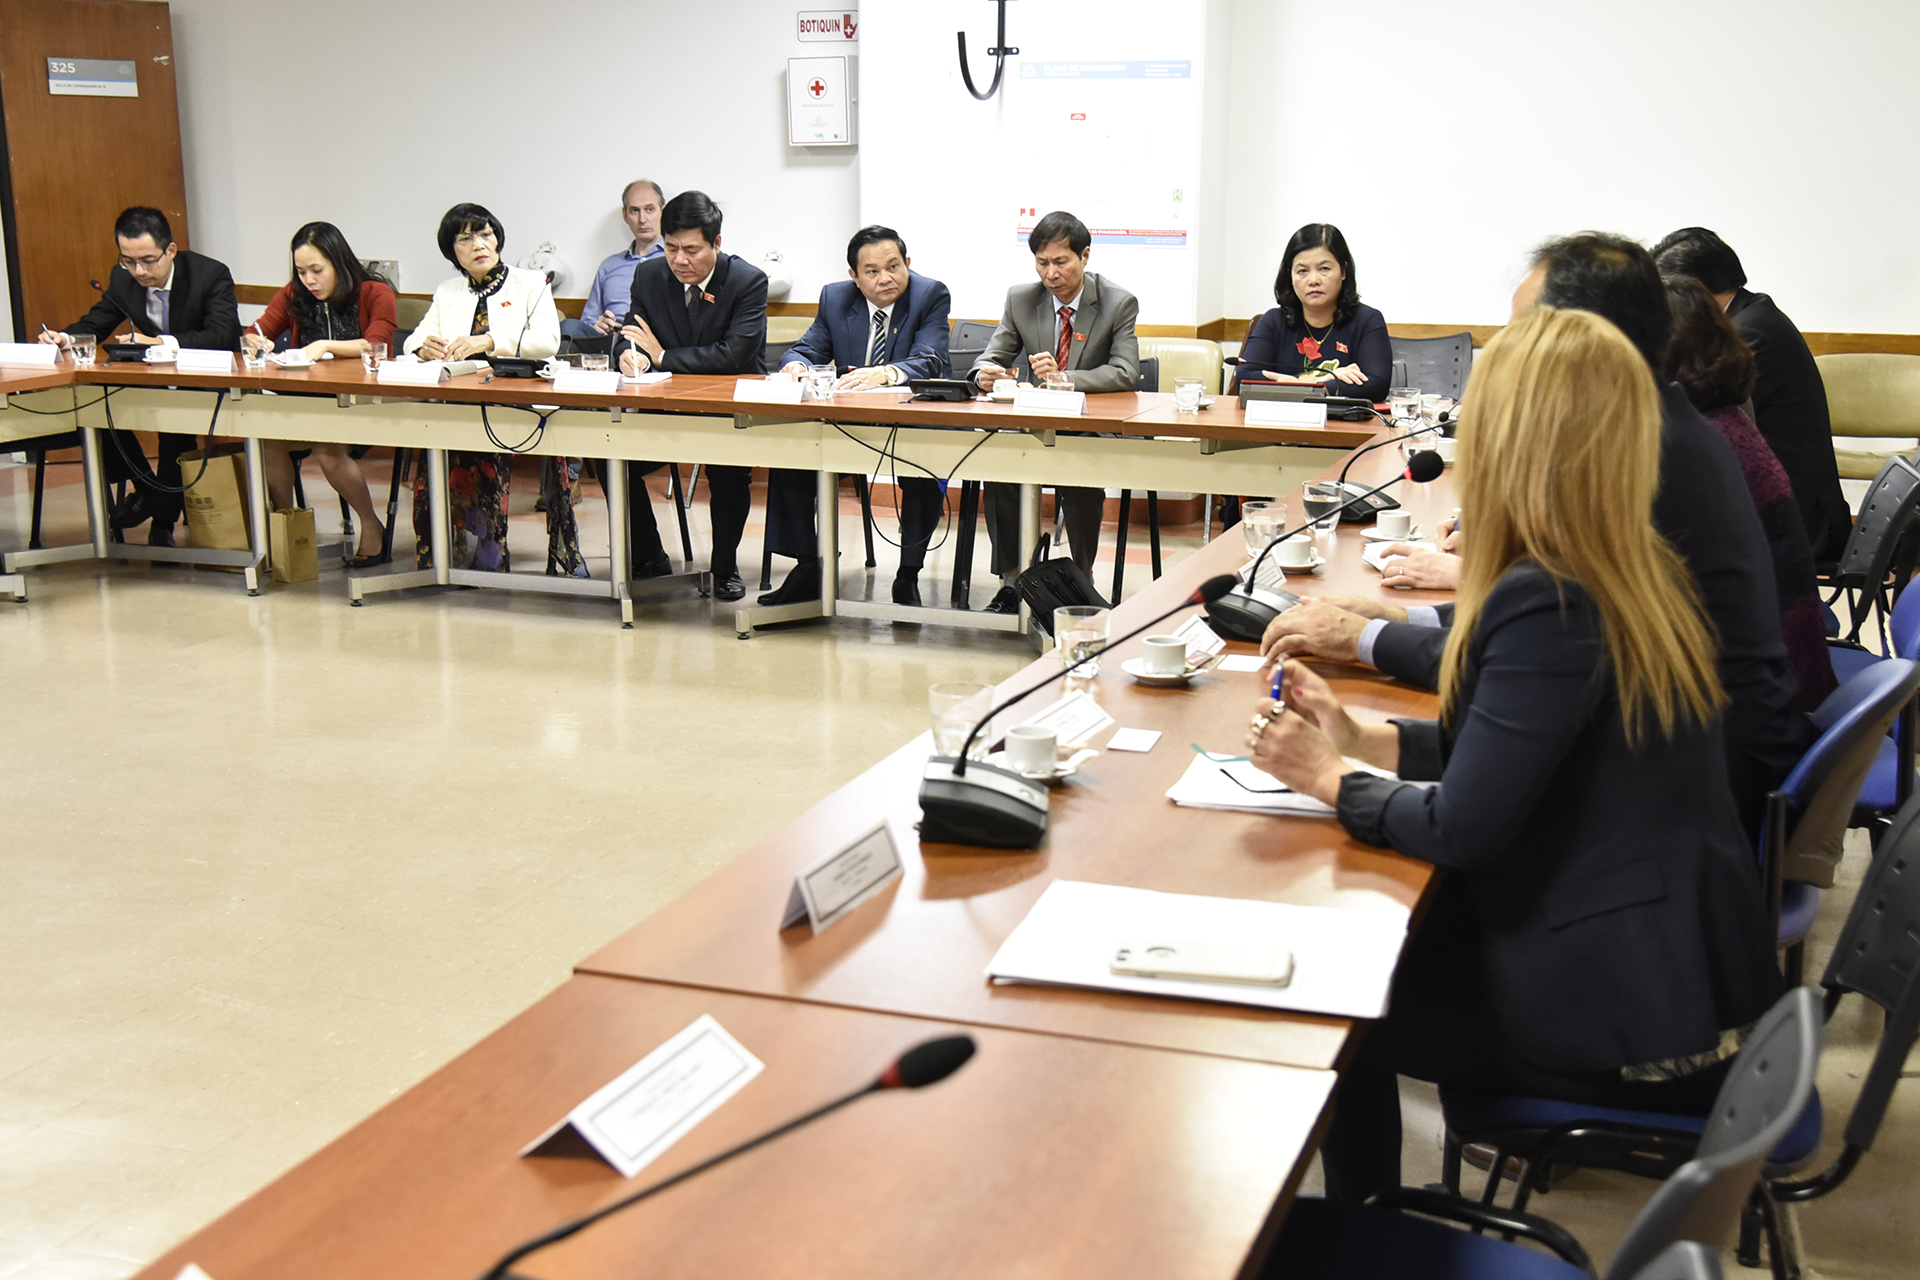 Una delegación de parlamentarios vietnamitas se reunió con sus pares argentinos